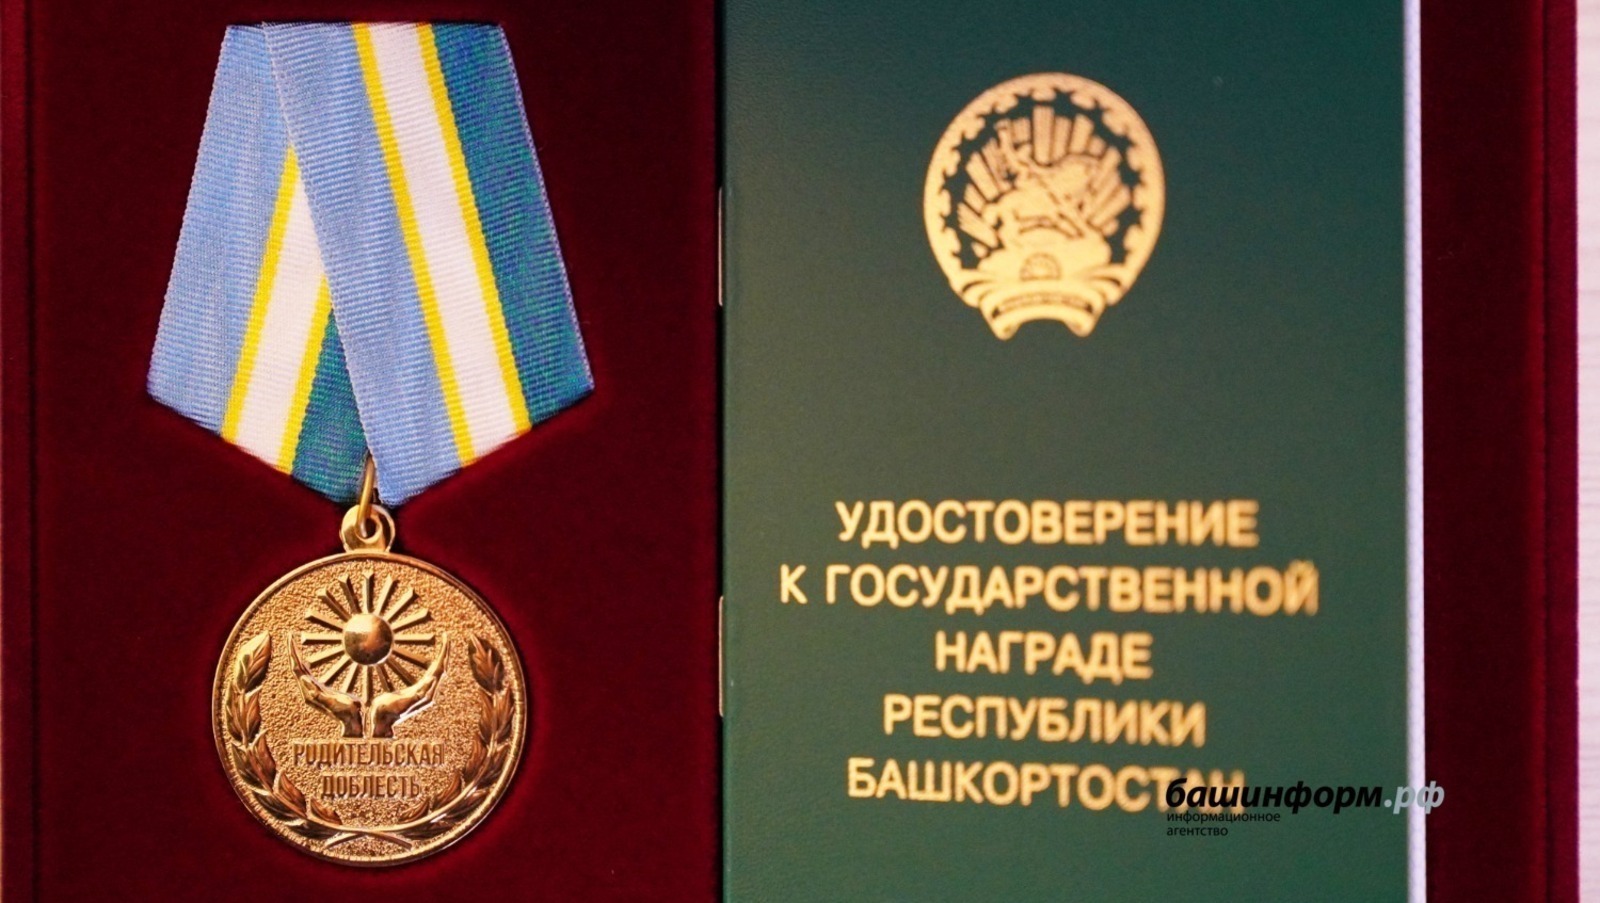 В Башкирии расширили список получателей медали «Родительская доблесть»